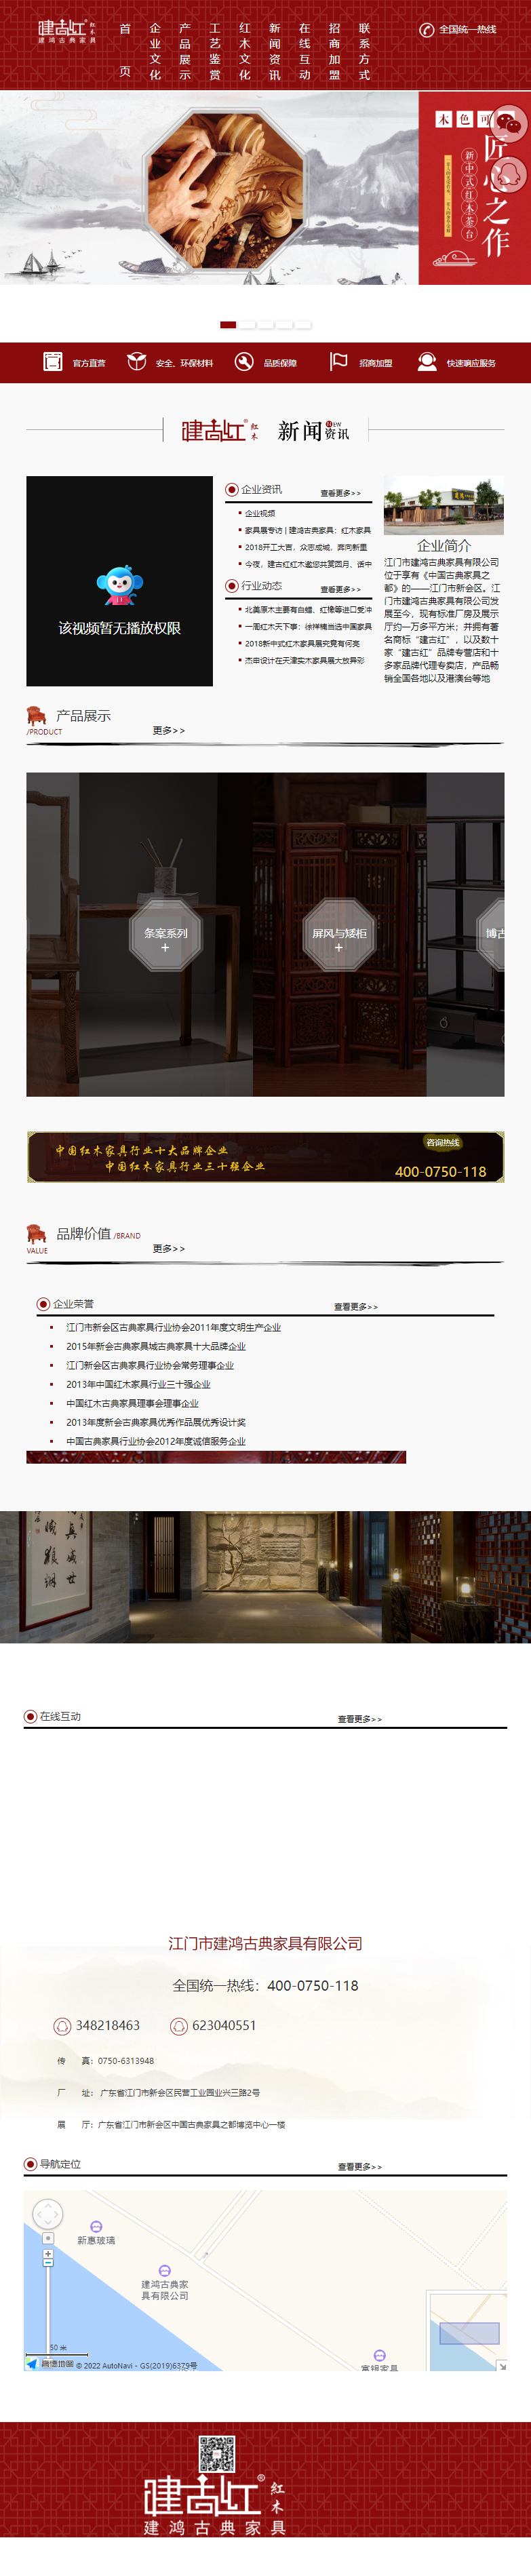 江门市建鸿古典家具有限公司网站案例